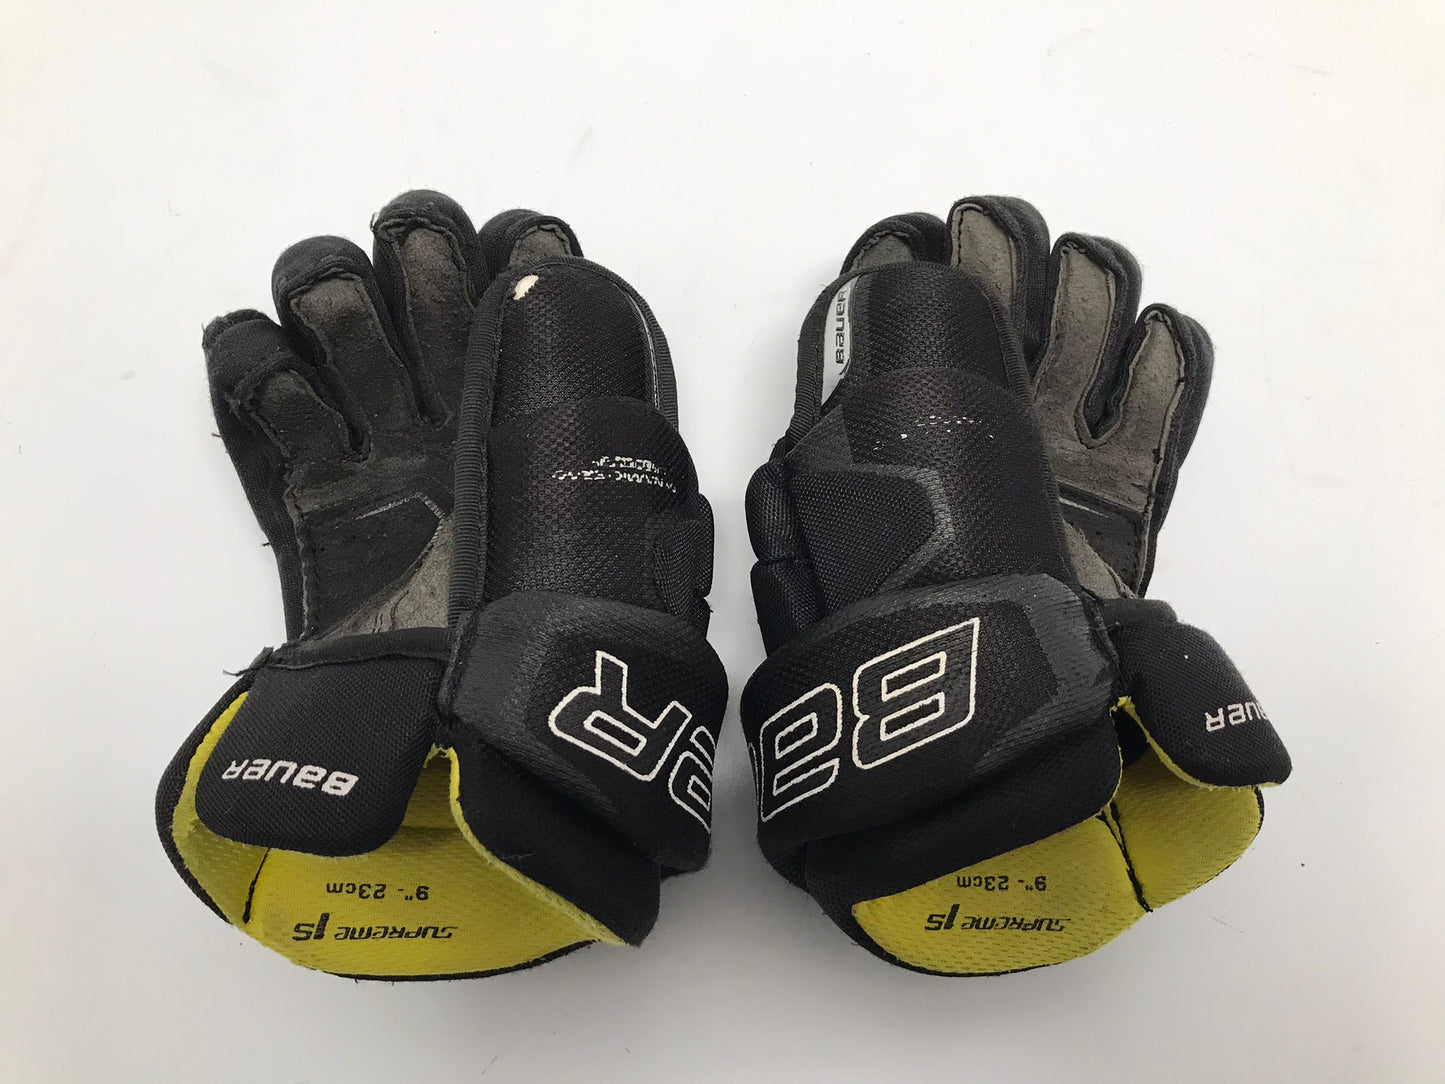 Hockey Gloves Child Size 9 inch Bauer Supreme  Black Yellow